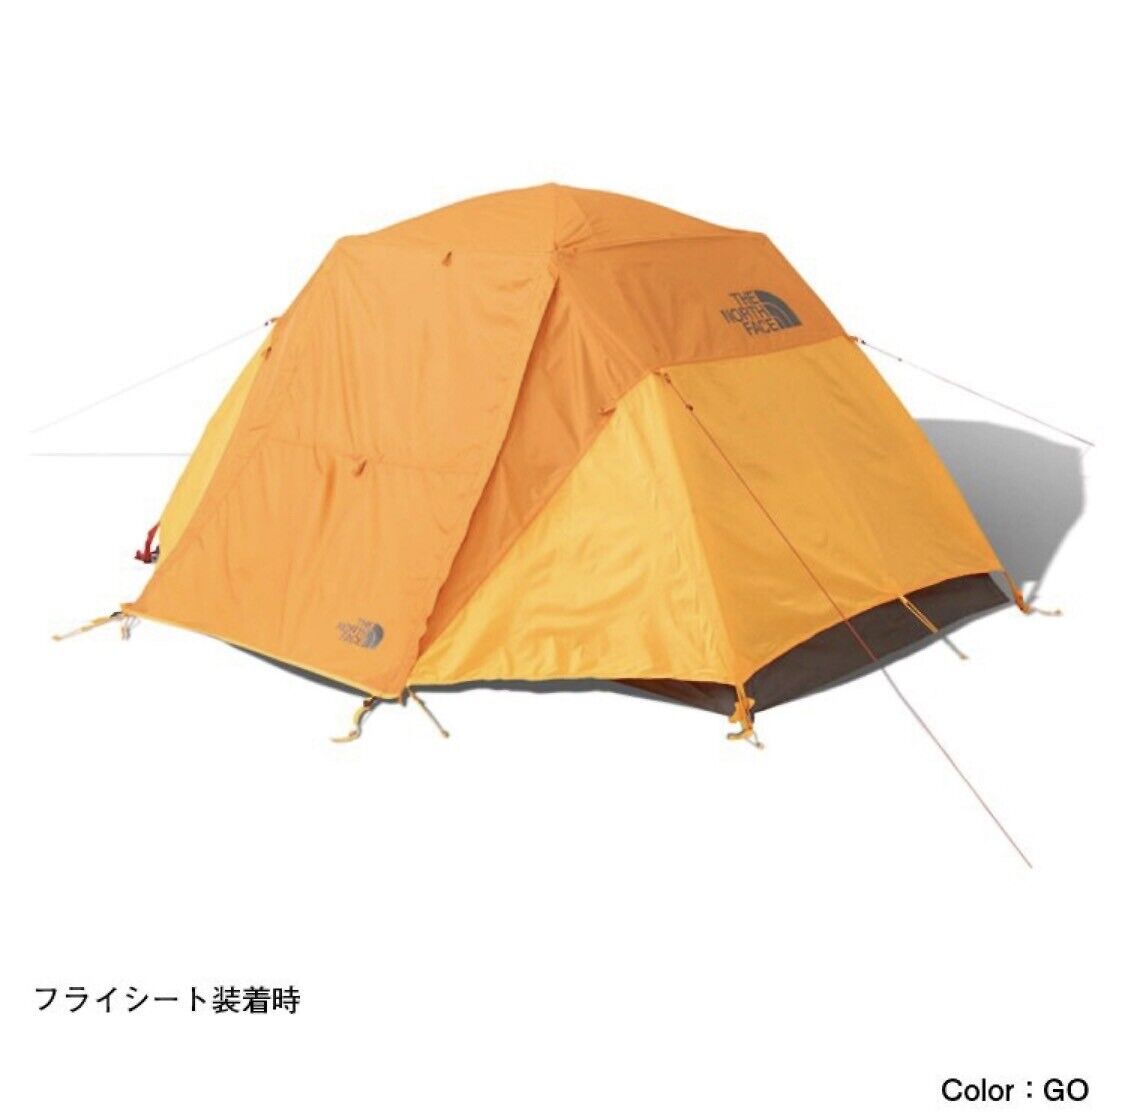 NV21803 GK Golden Oak North Face North Star 6 Tent NV21803 Japan New